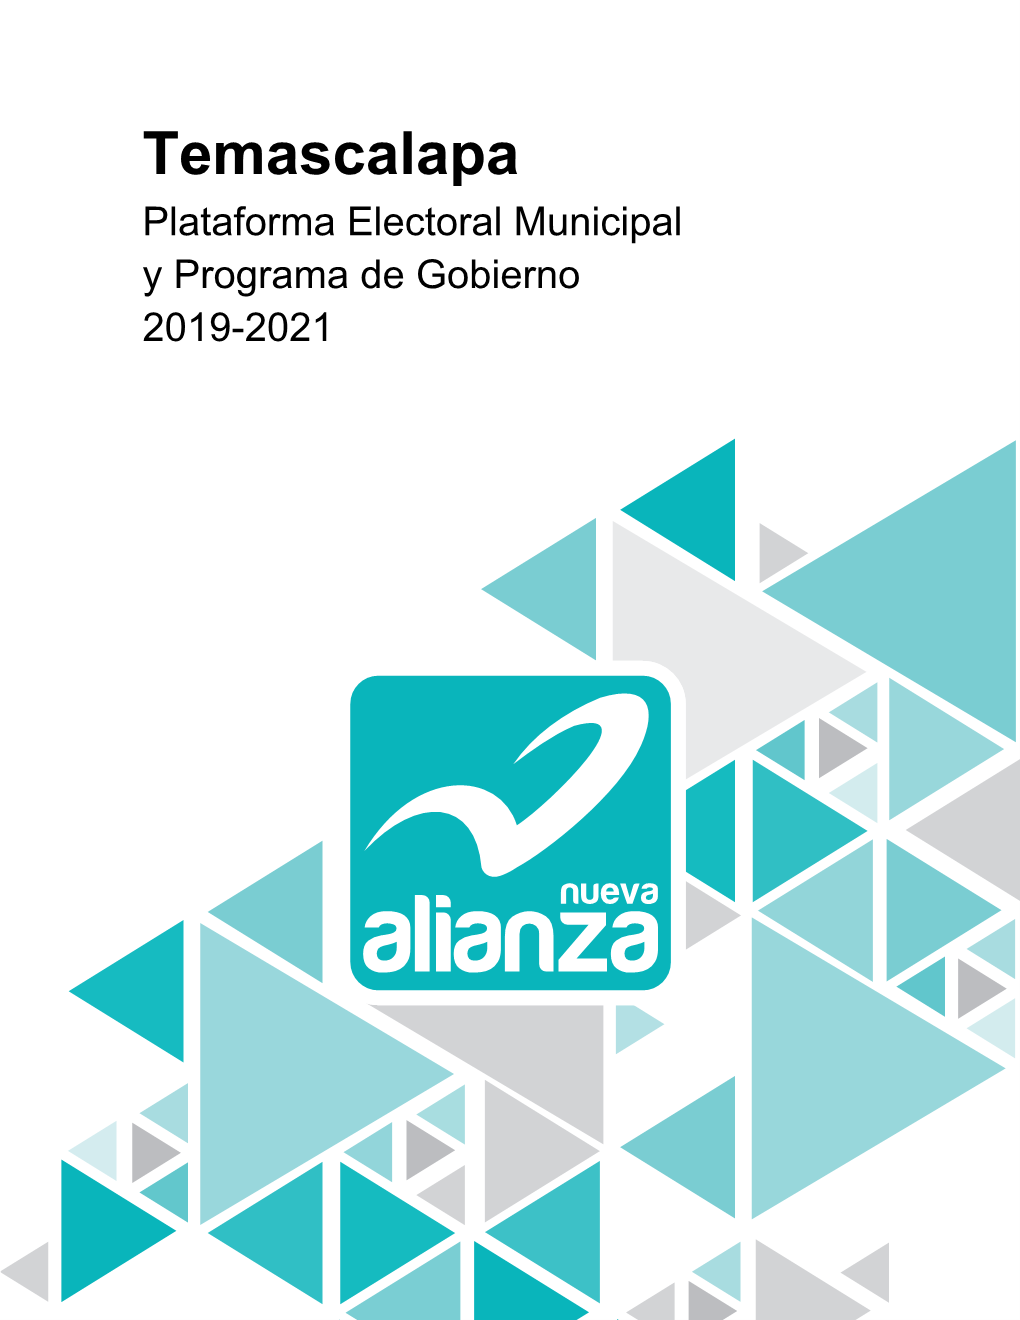 Temascalapa Plataforma Electoral Municipal Y Programa De Gobierno 2019-2021